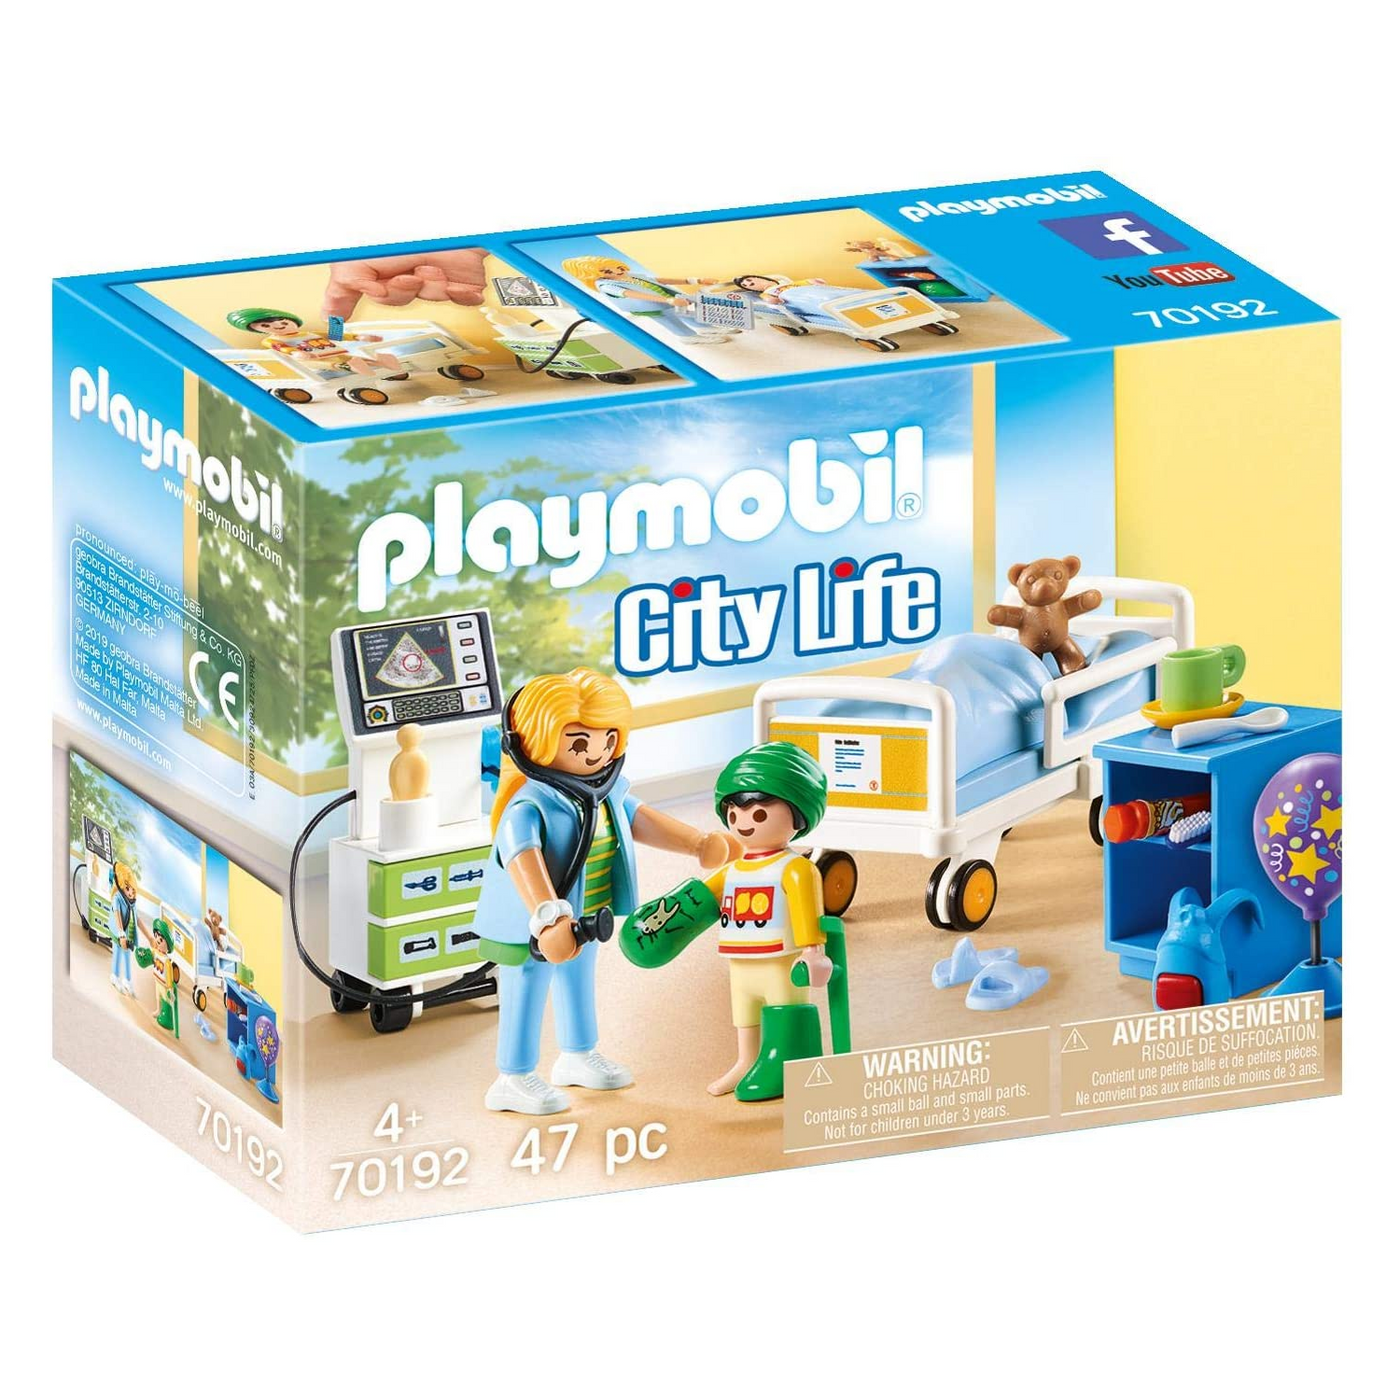 Playmobil 70989 City Life - Family Room - Toysa Company A Playmobil Store